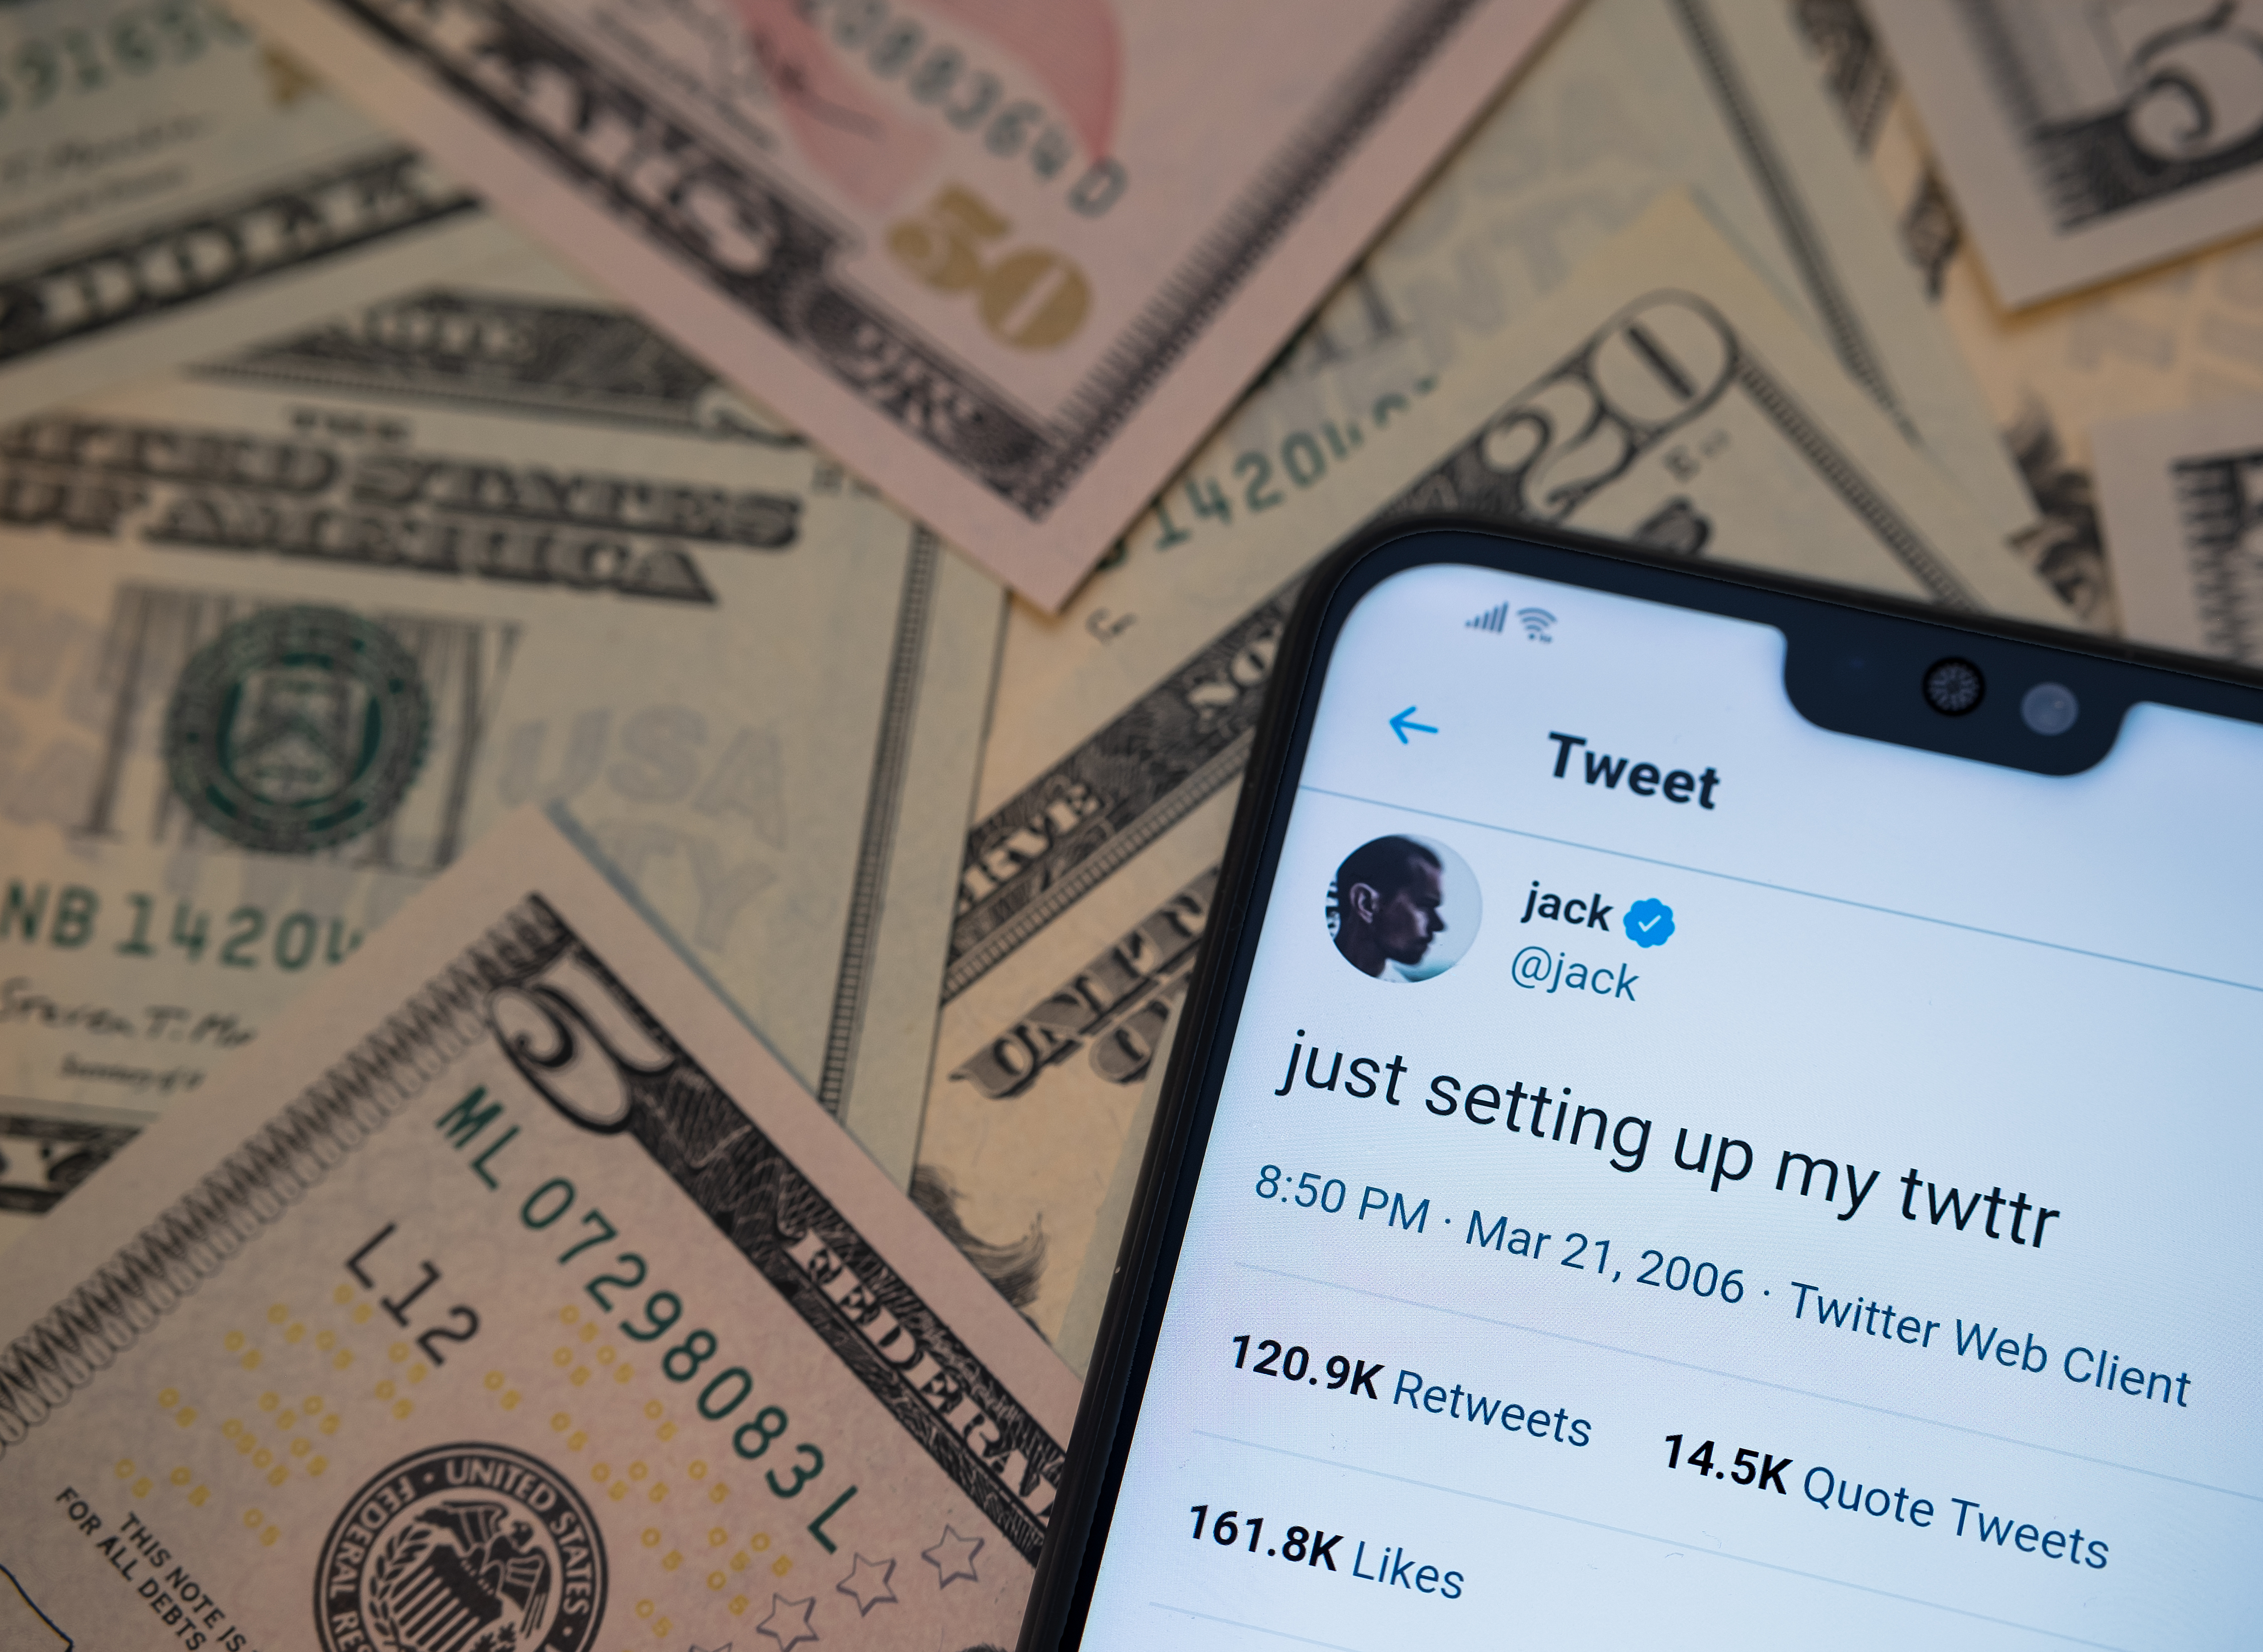 트위터 CEO 잭 도시가 맨 처음 올린 게시글 '방금 내 트위터 설정함' 이 한 줄이 290만 달러(32억원).